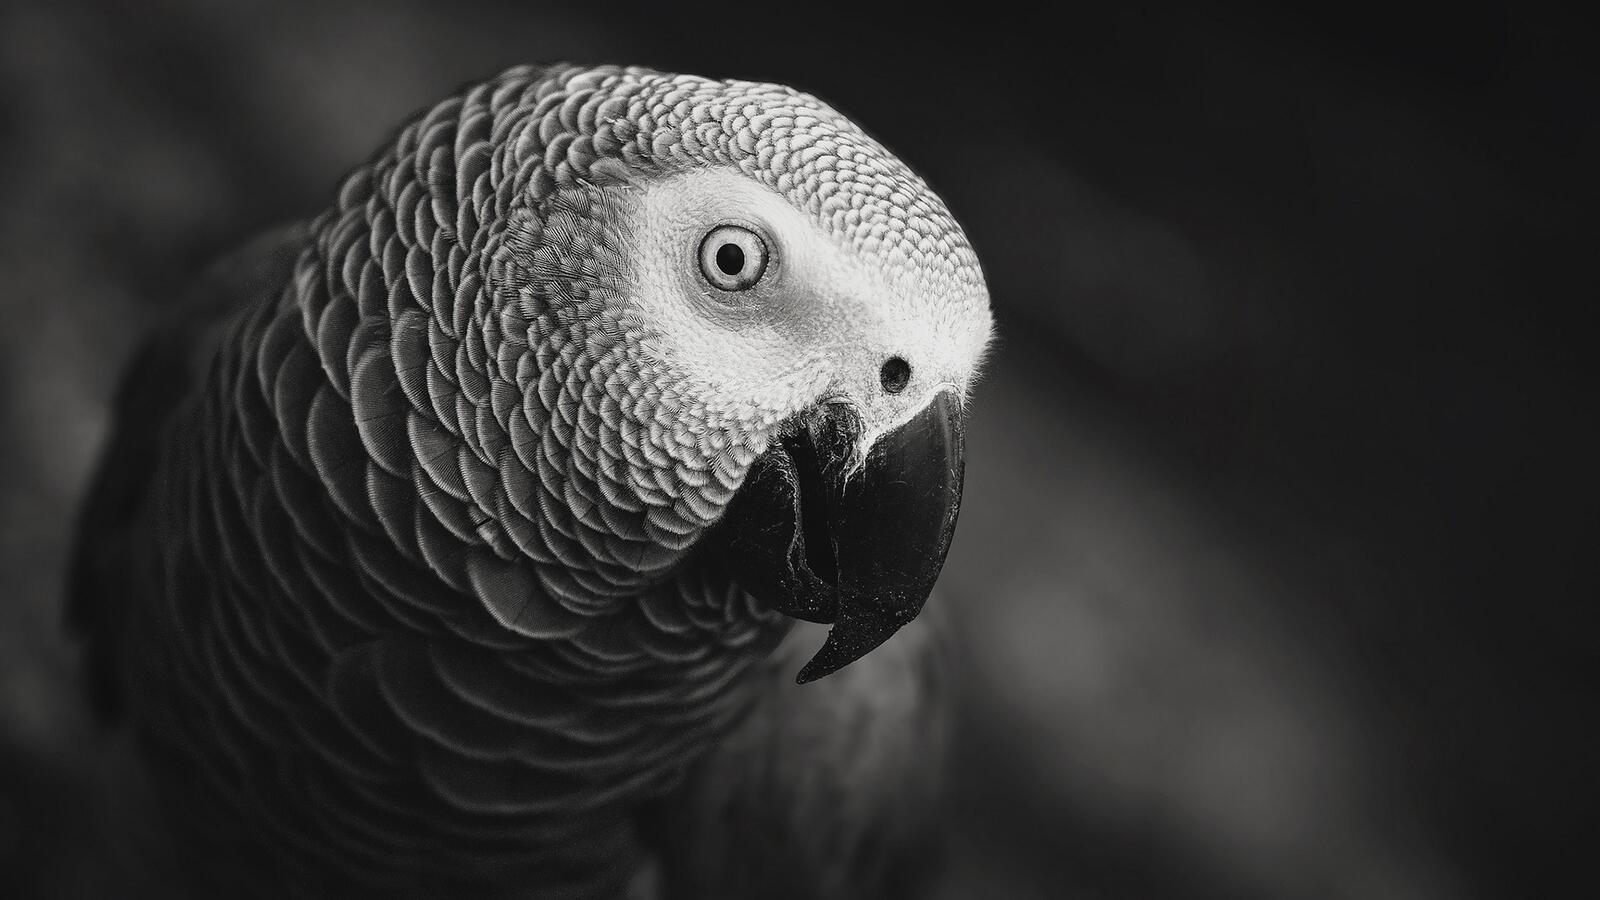 Бесплатное фото Любопытный попугай смотрит в объектив